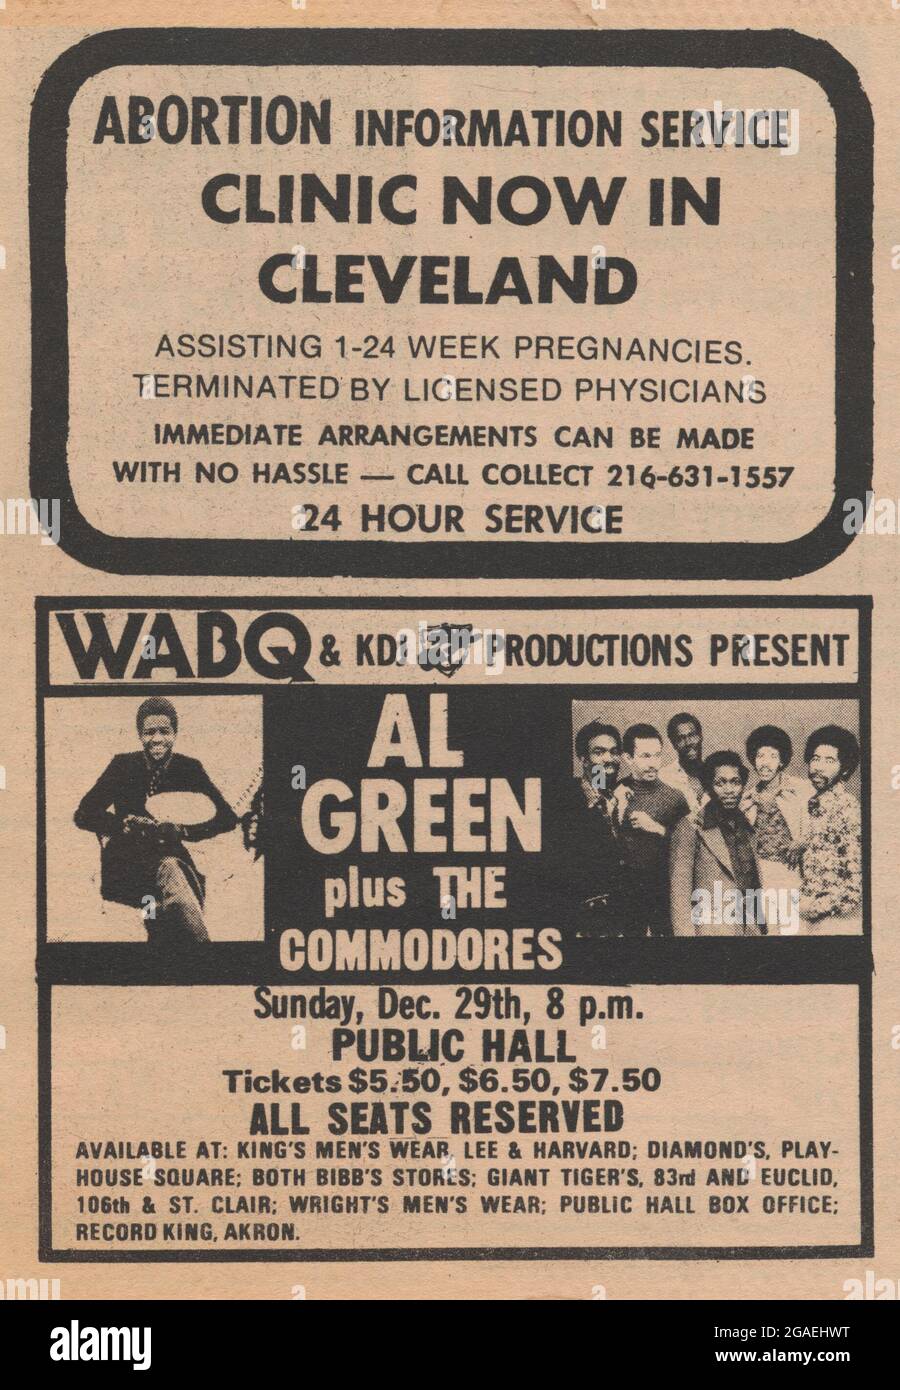 1974 anuncio de clínica de aborto, Cleveland, Ohio, en anuncios clasificados junto al concierto de rock Al Green. Foto de stock